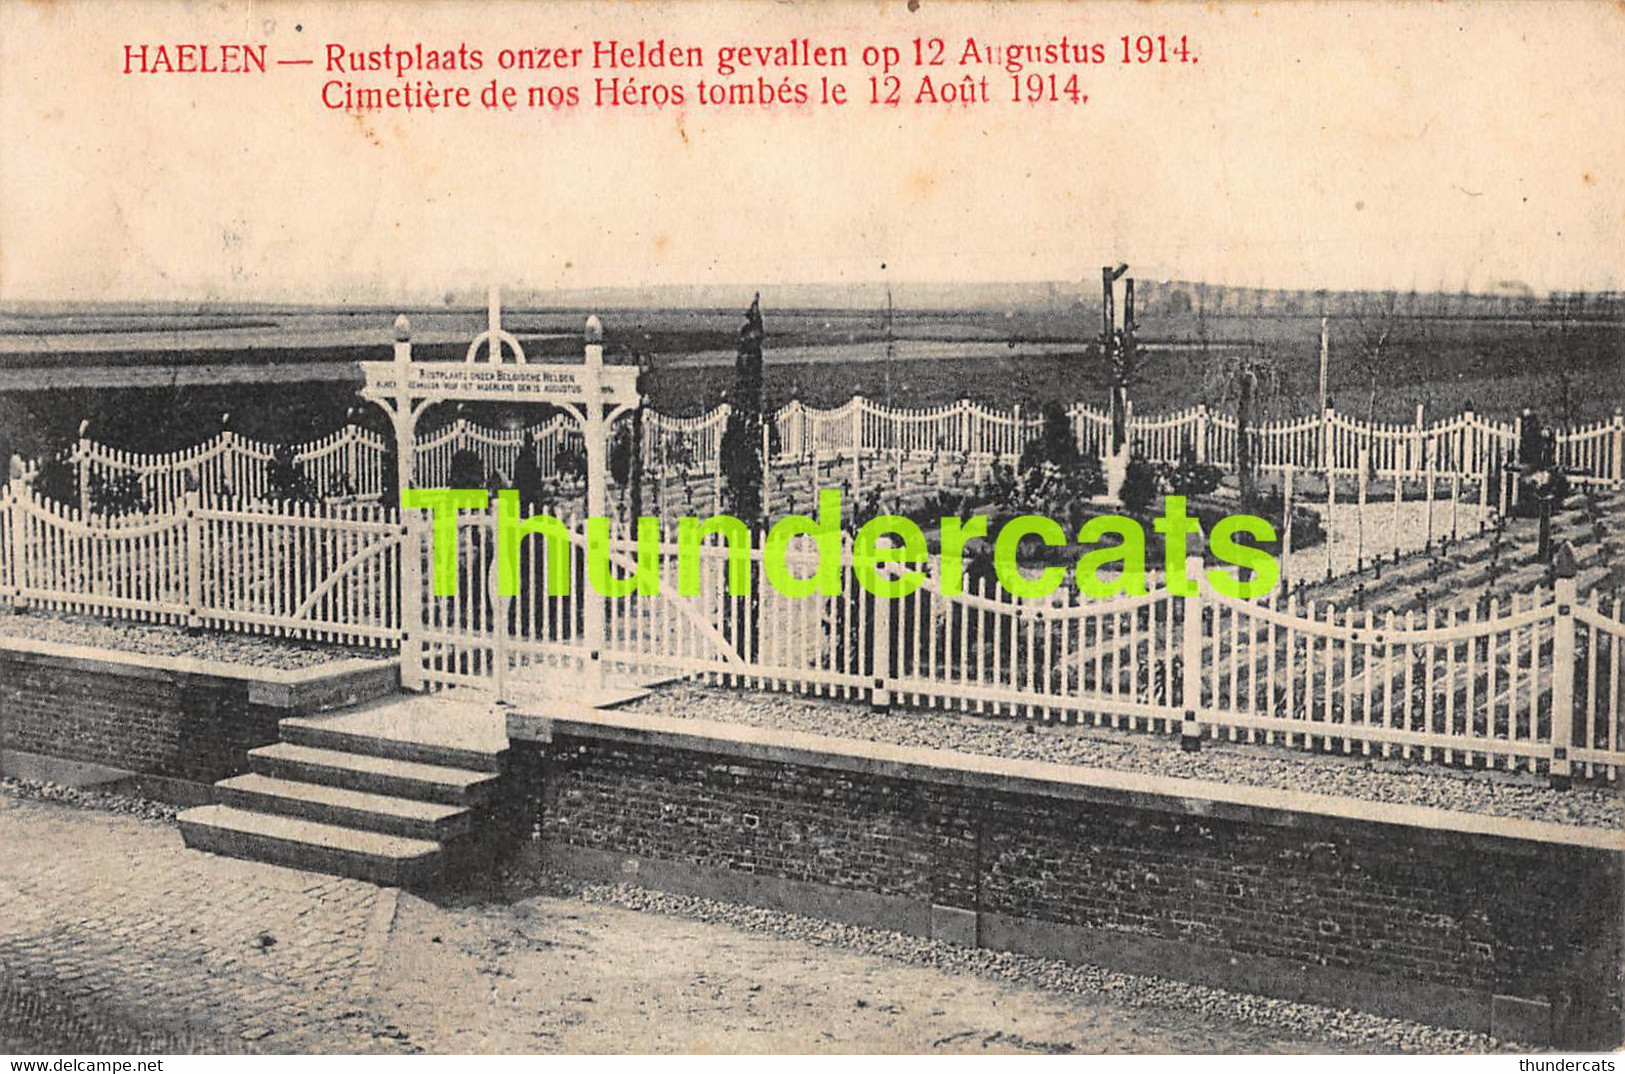 CPA  HALEN HAELEN RUSTPLAATS ONZER HELDEN GEVALLEN OP 12 AUGUSTUS 1914 CIMETIERE - Herk-de-Stad